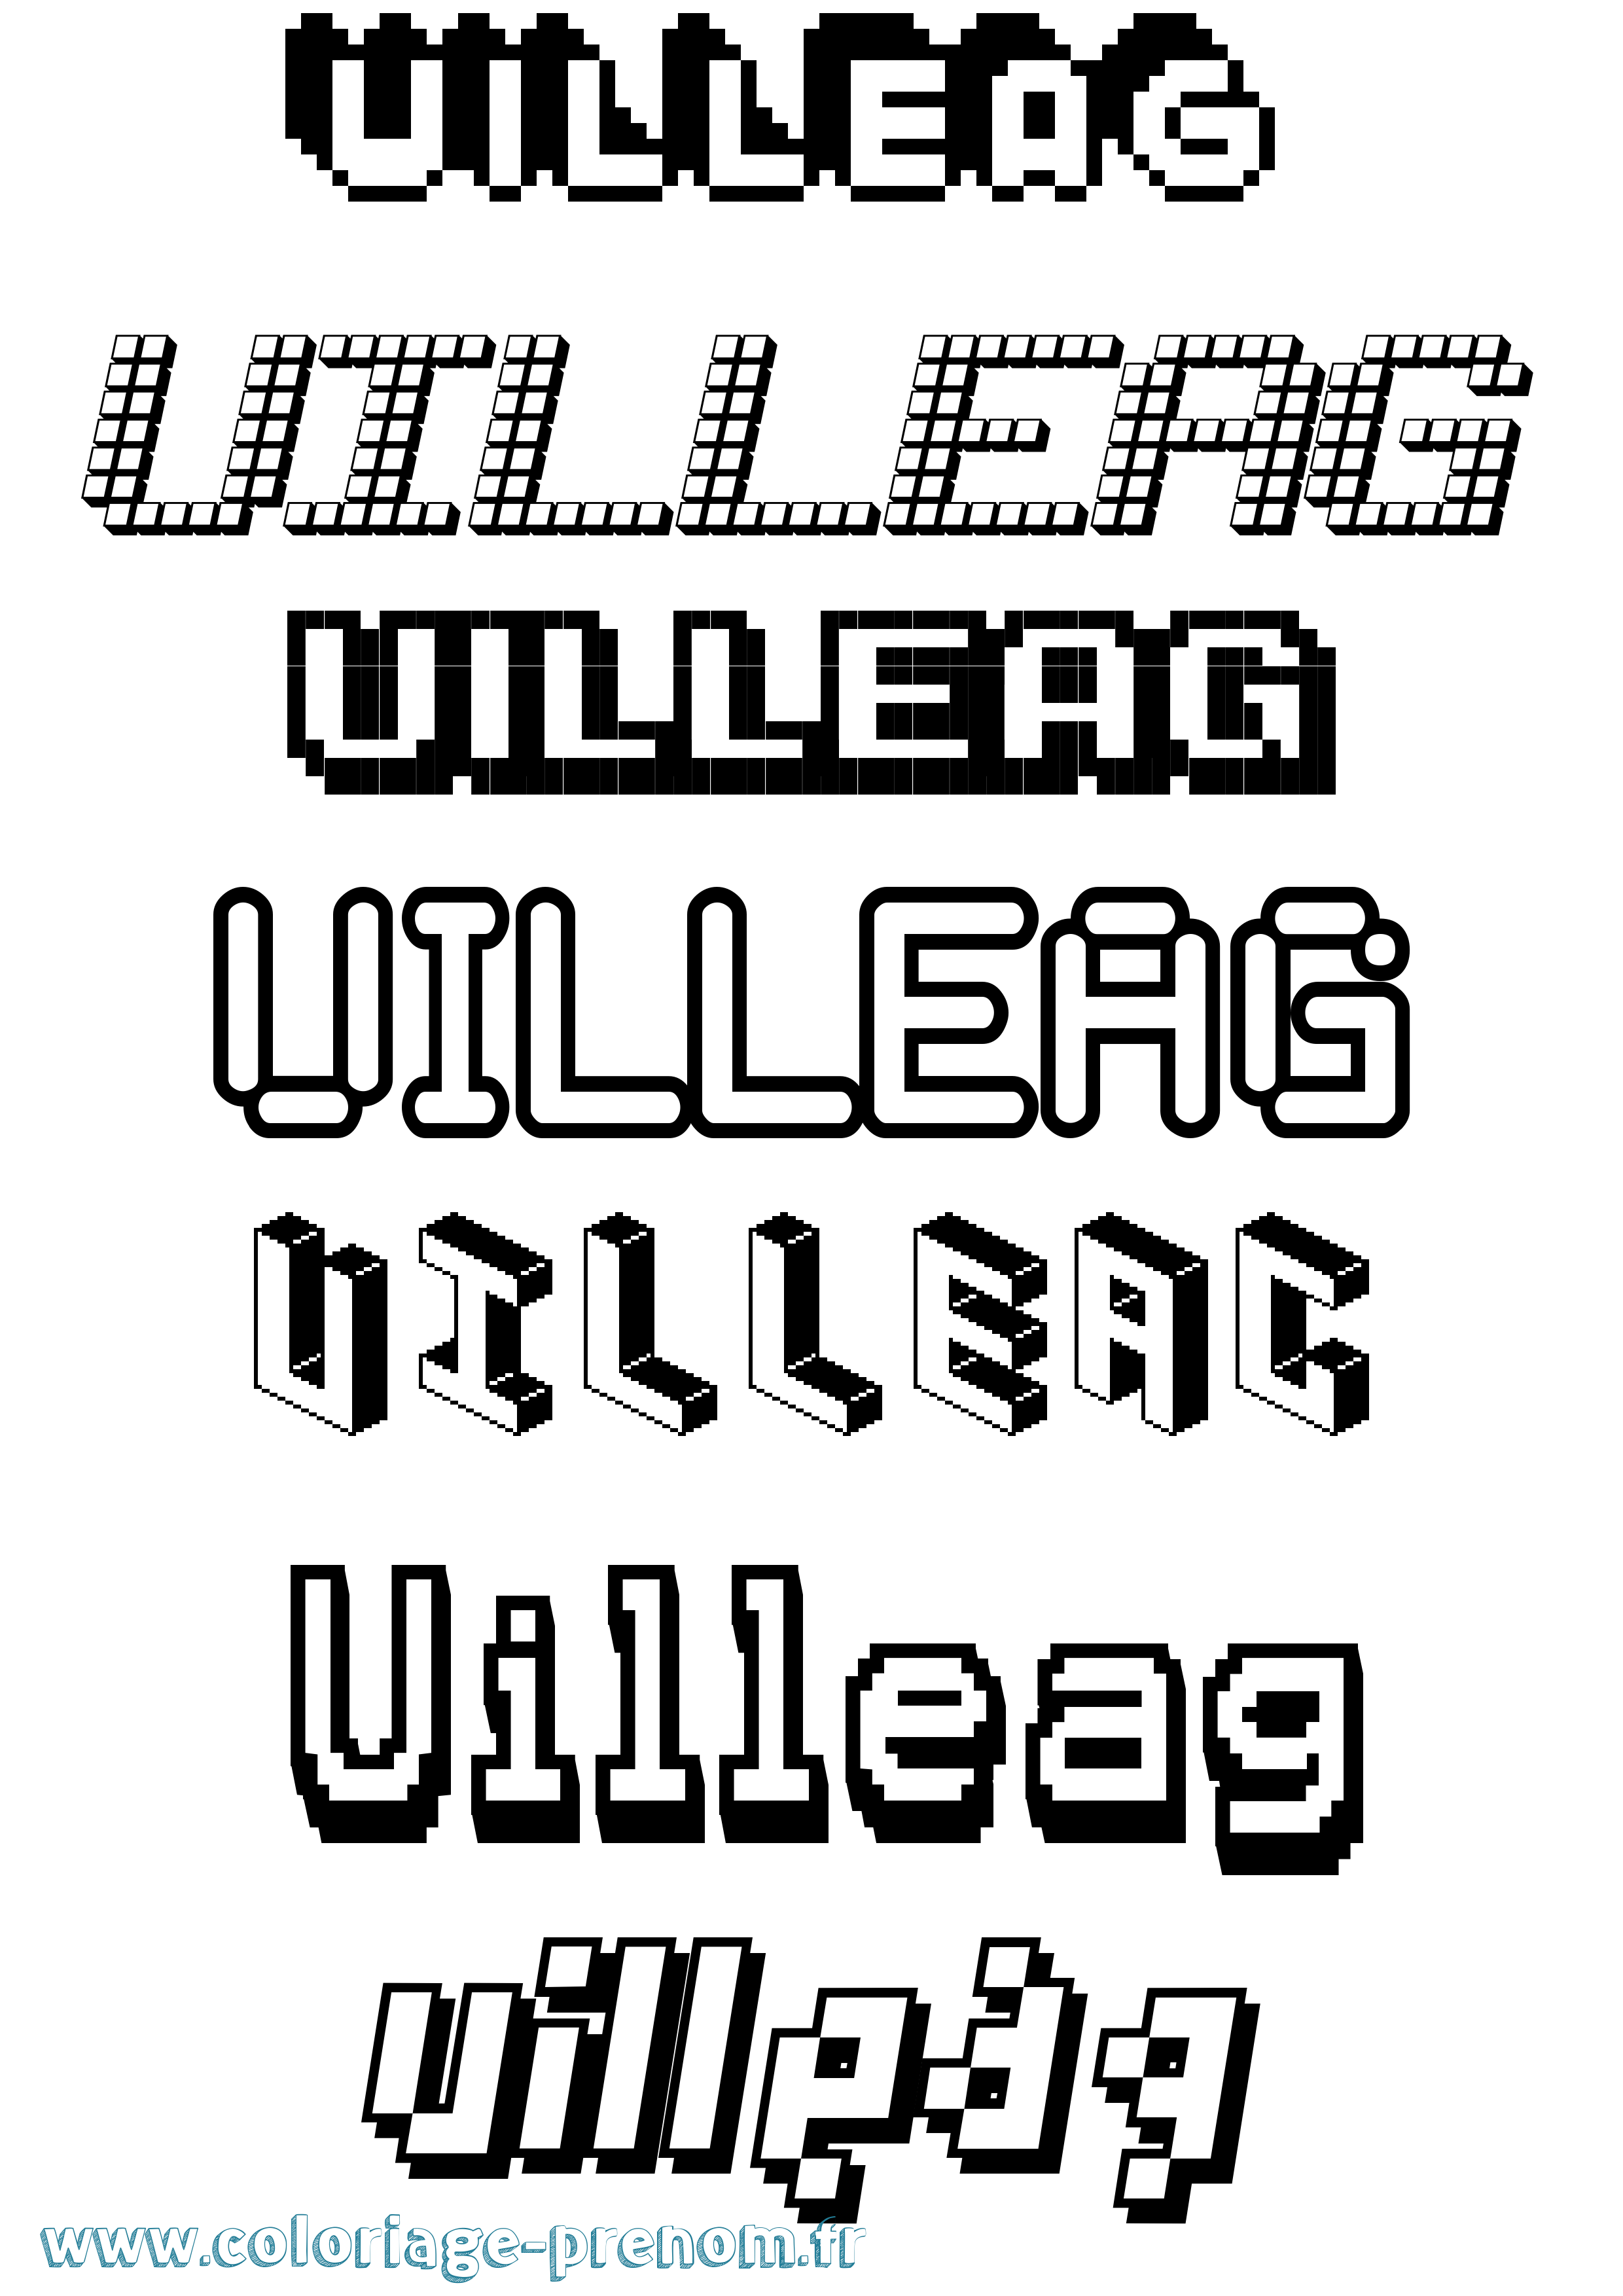 Coloriage prénom Uilleag Pixel